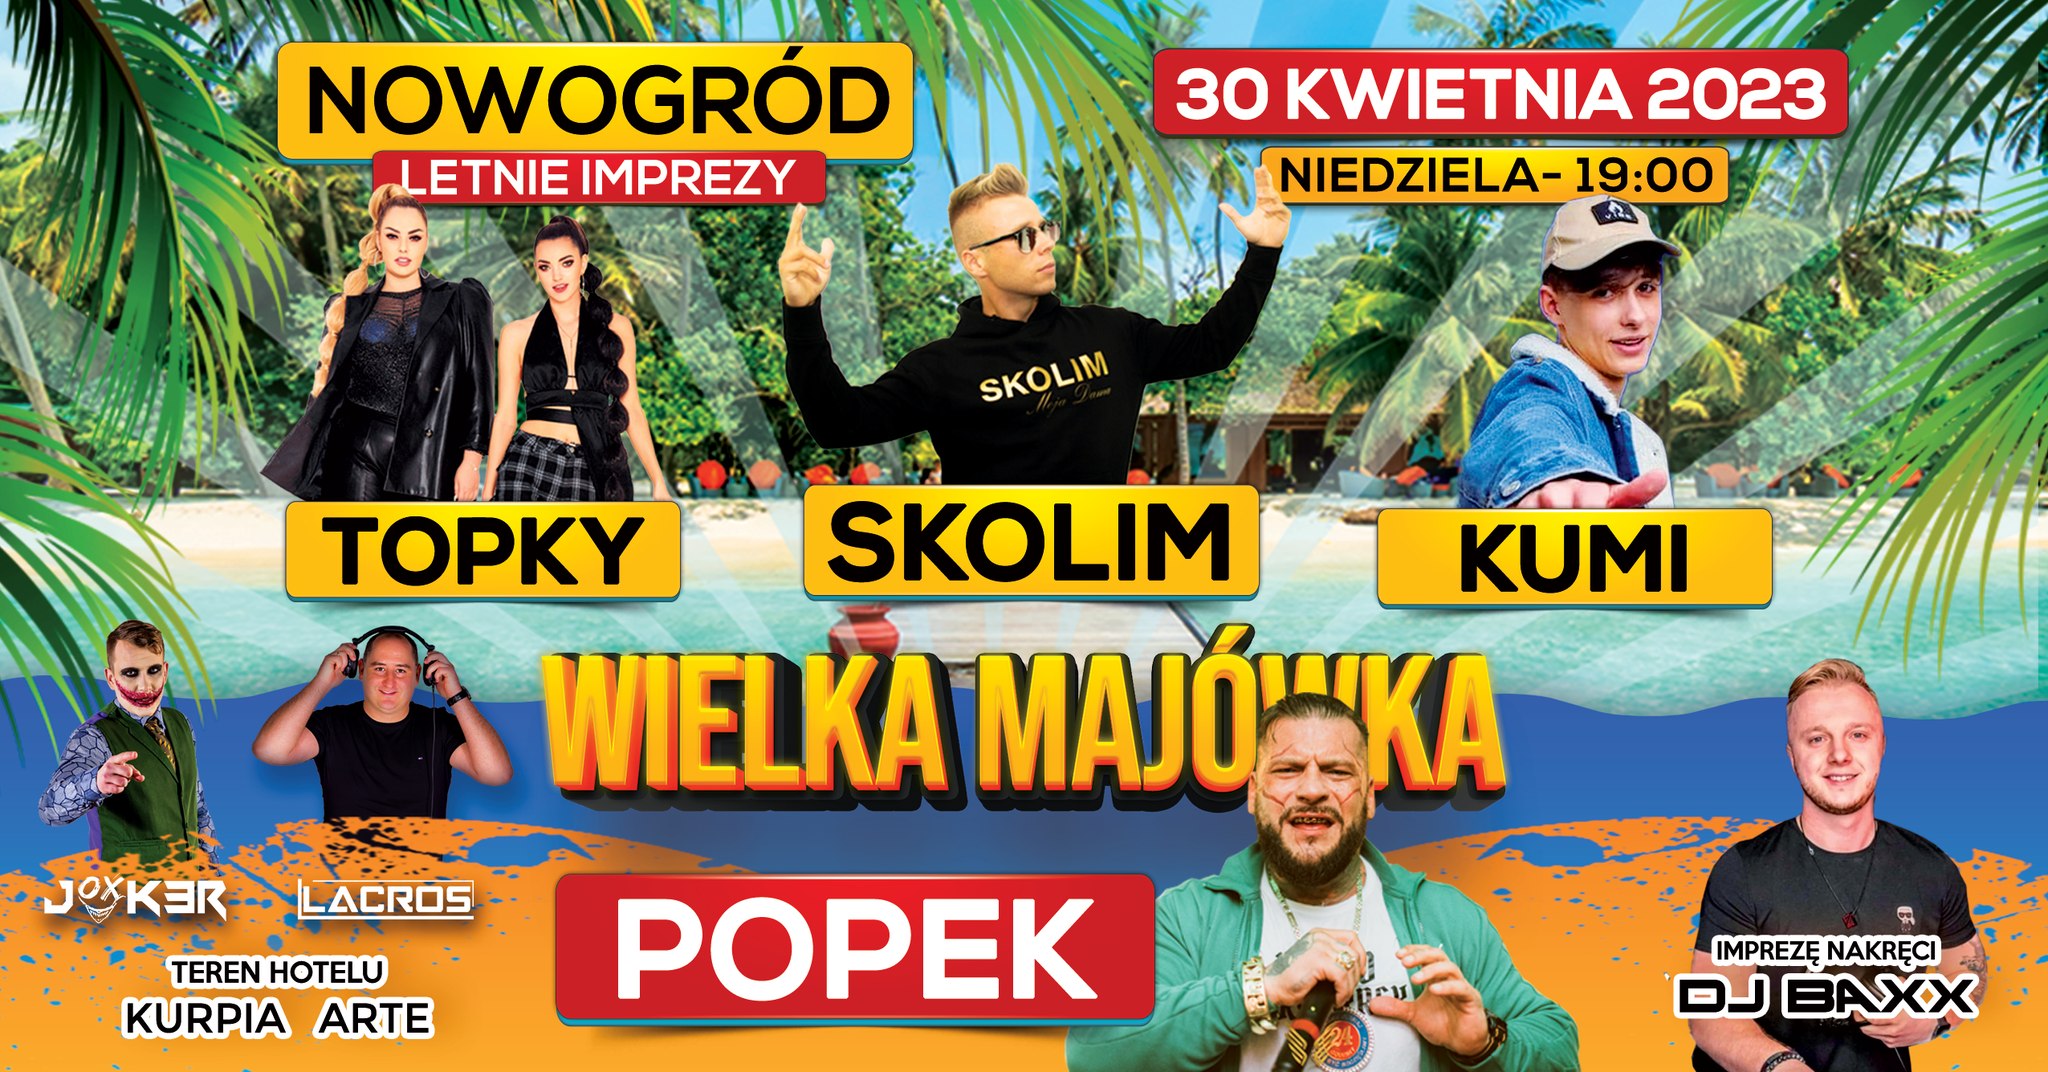 Imprezy Nowogród 2023 wystąpią: Skolim, Topky i Kumi! 